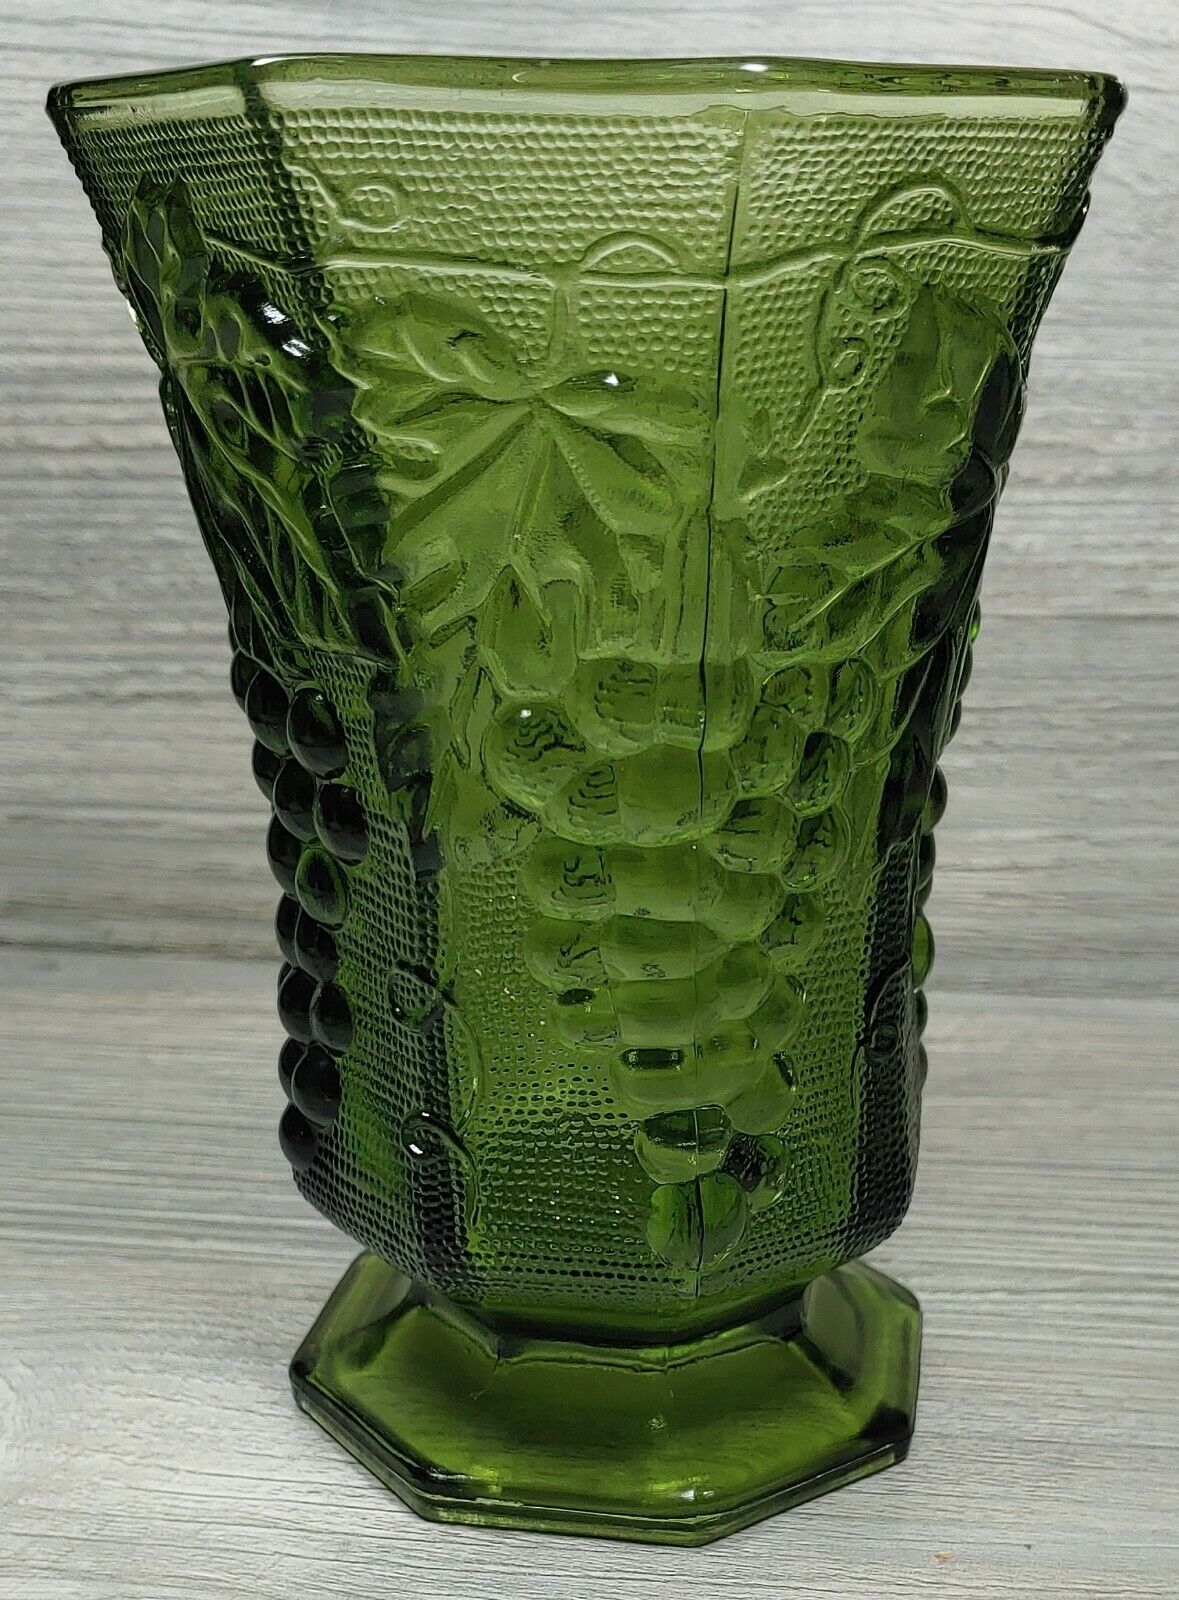  Anchor Hocking Avocado Green Glass Vase Embossed Grapes Leaf Design Footed VTG